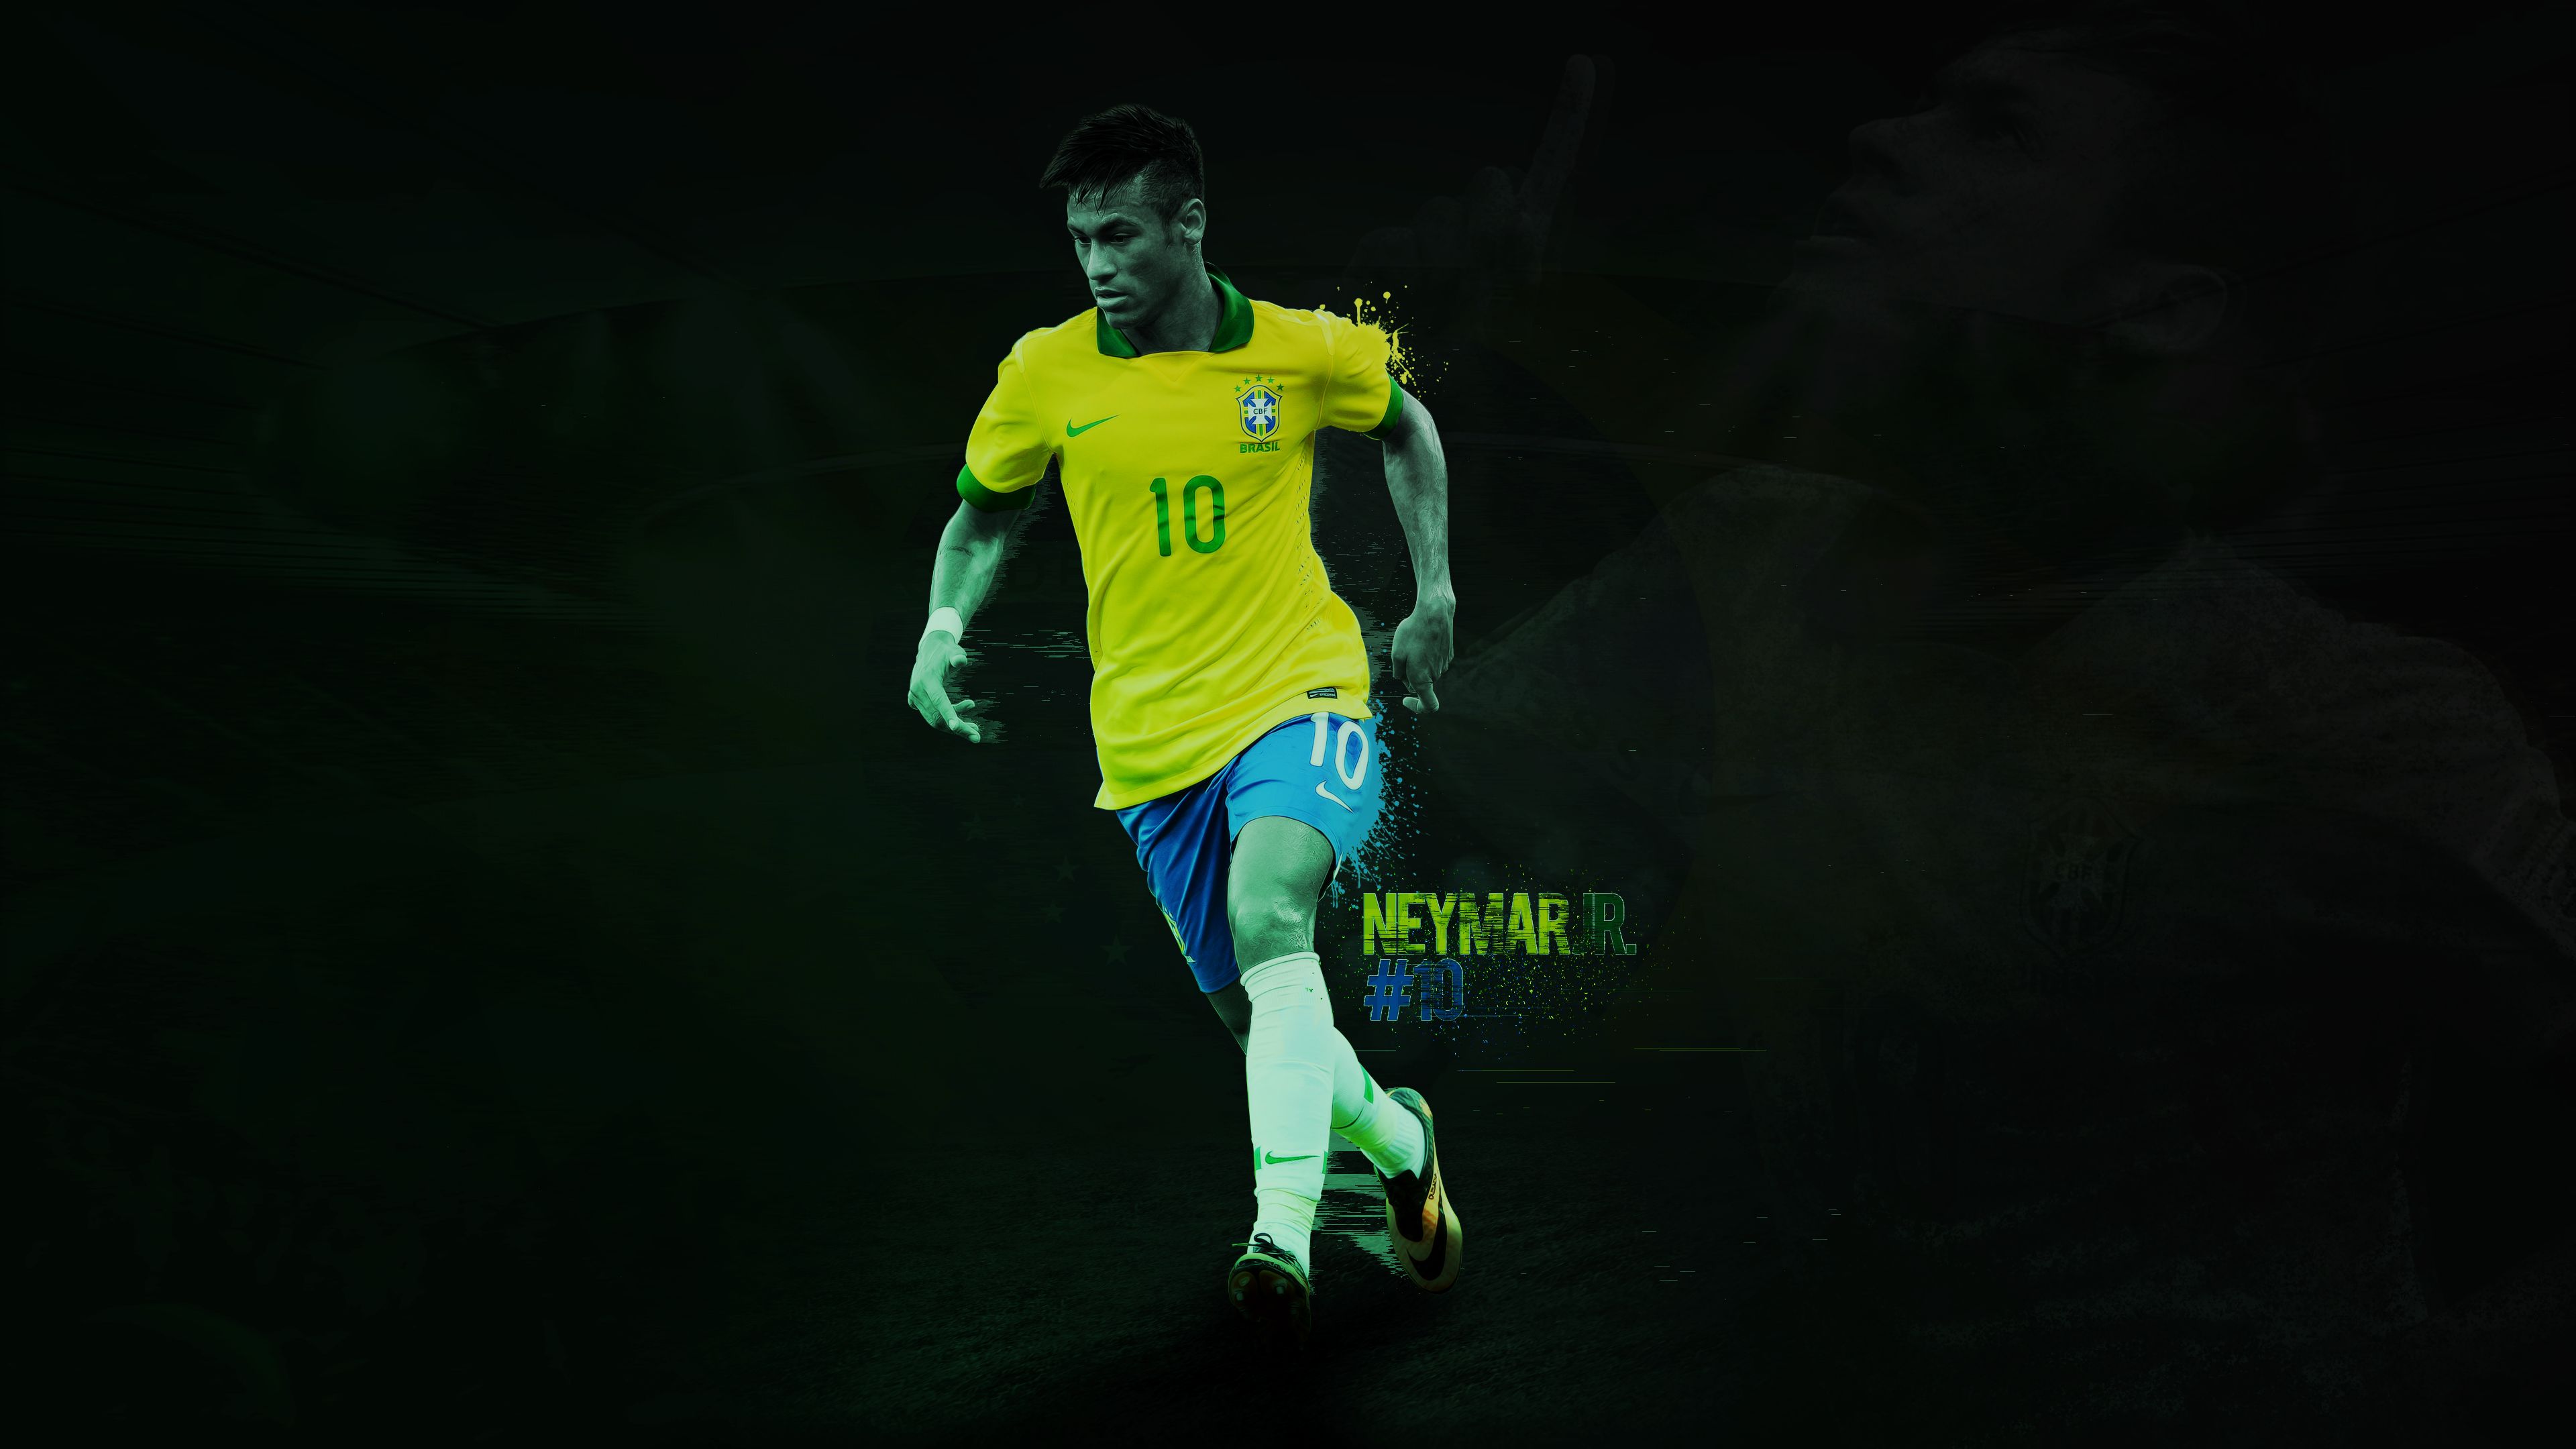 Download mobile wallpaper Sports, Soccer, Neymar, Brazil National Football Team for free.